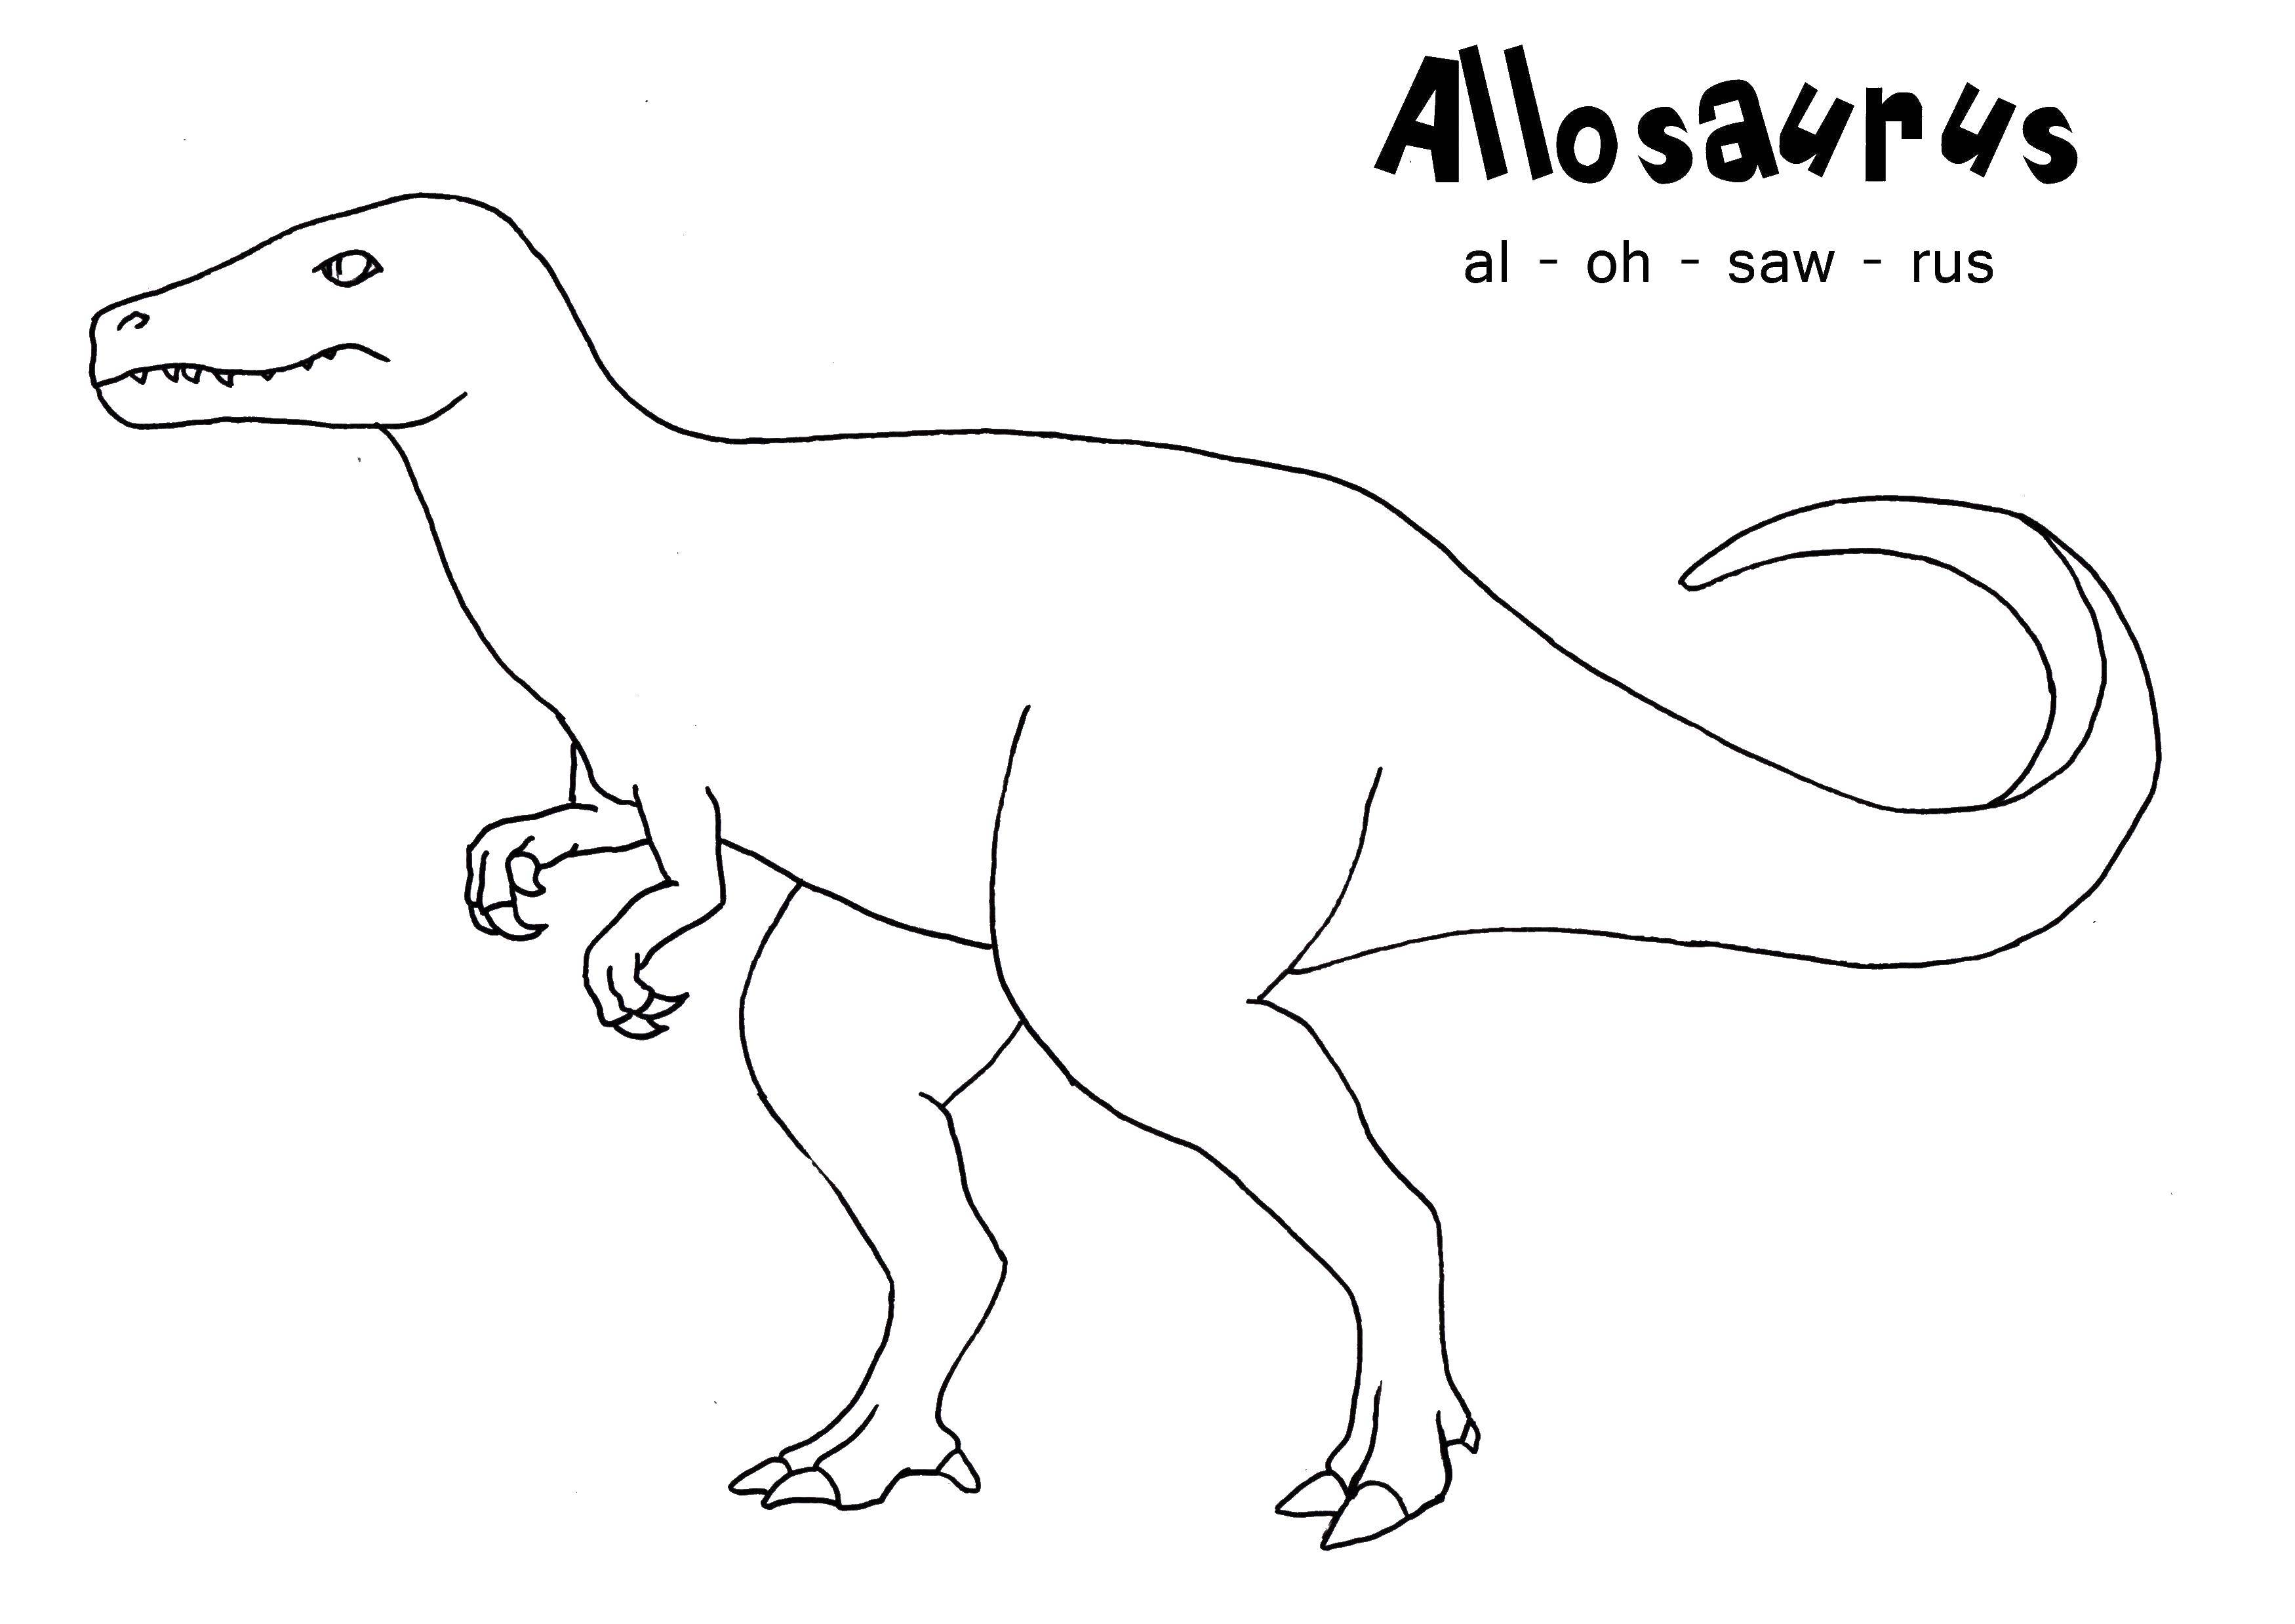 Coloring Allosaurus. Category dinosaur. Tags:  allosaurus, dinosaurs.